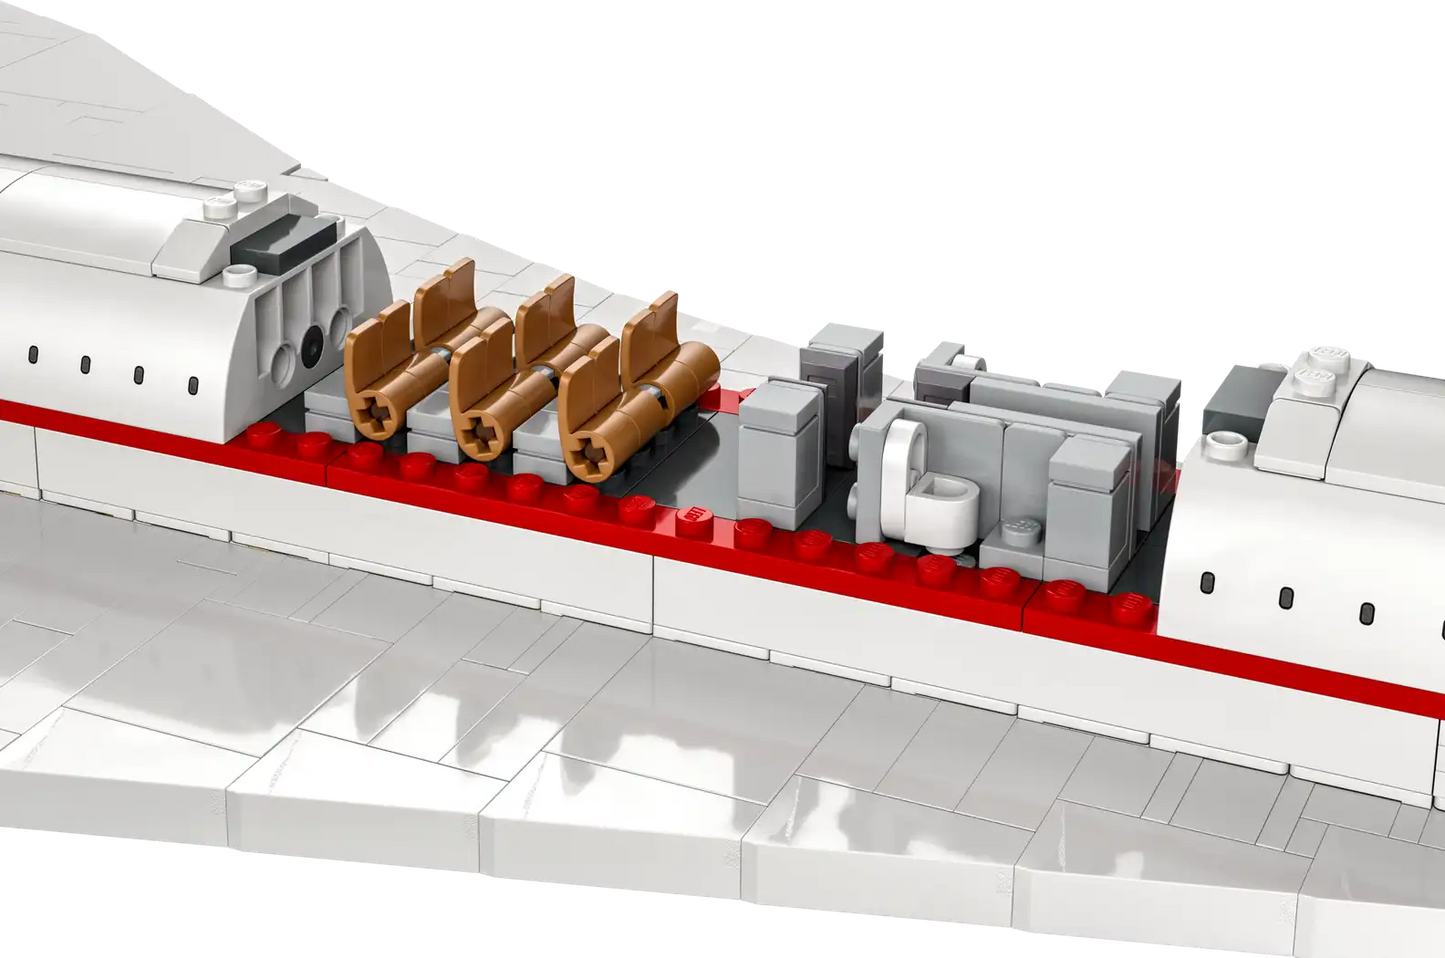 Set Lego Ideas Airbus Concorde